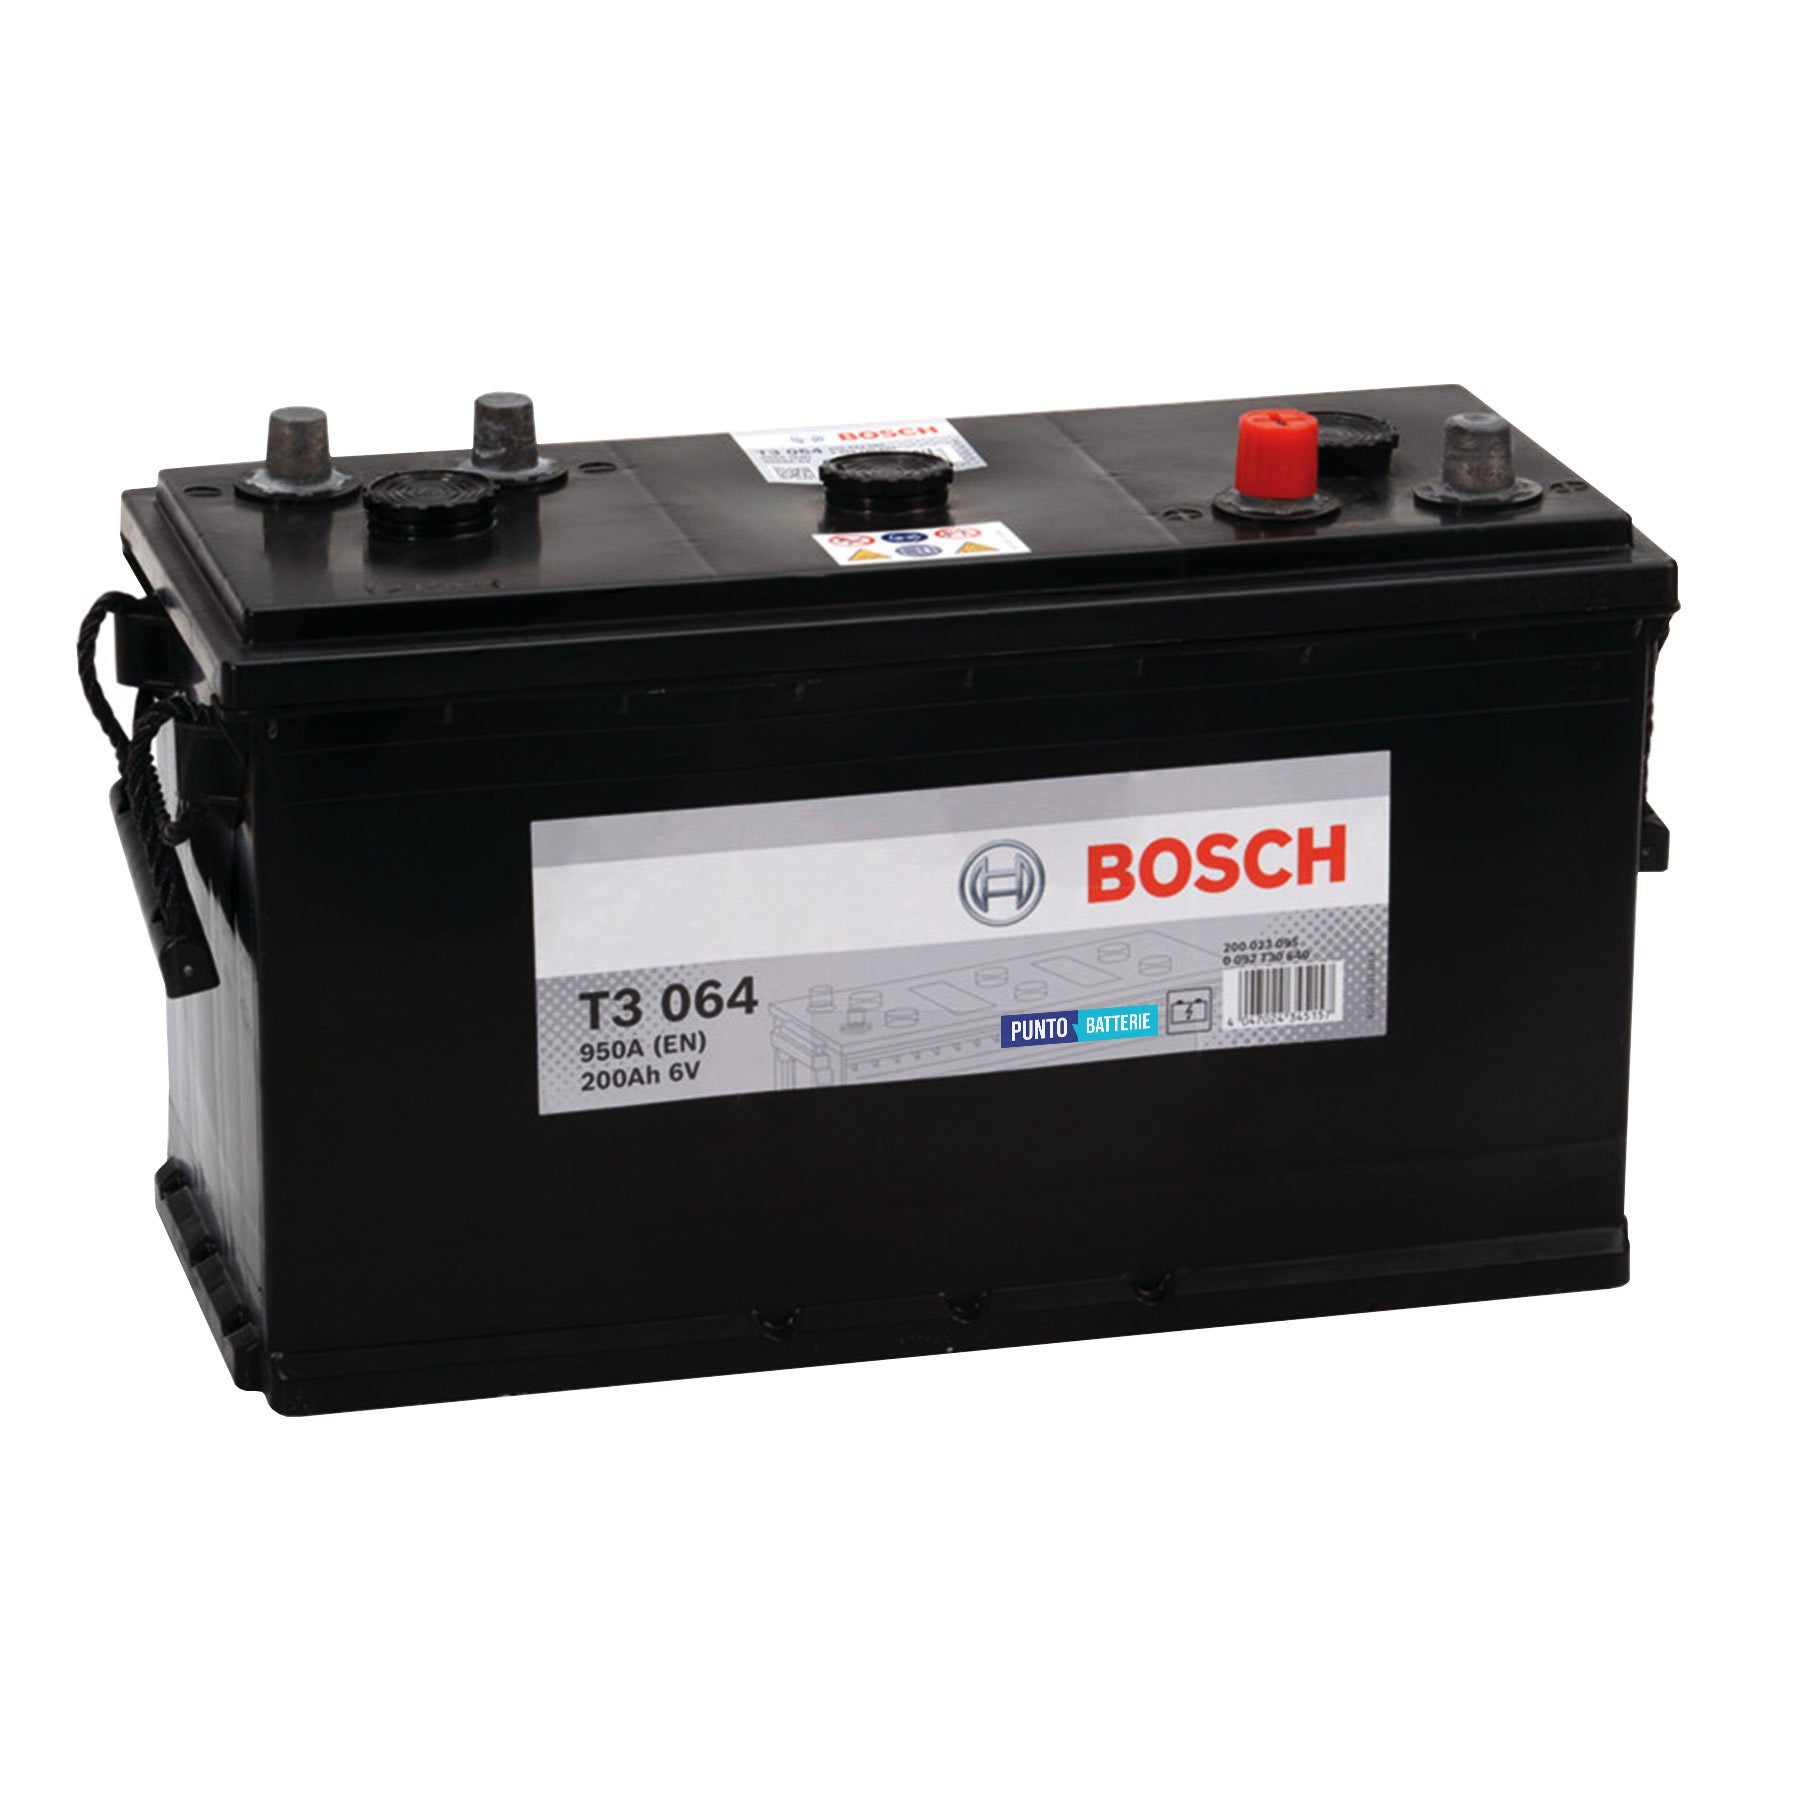 Batteria originale Bosch T3 T3064, dimensioni 403 x 175 x 235, polo positivo a destra, 6 volt, 200 amperora, 950 ampere. Batteria per camion e veicoli pesanti.